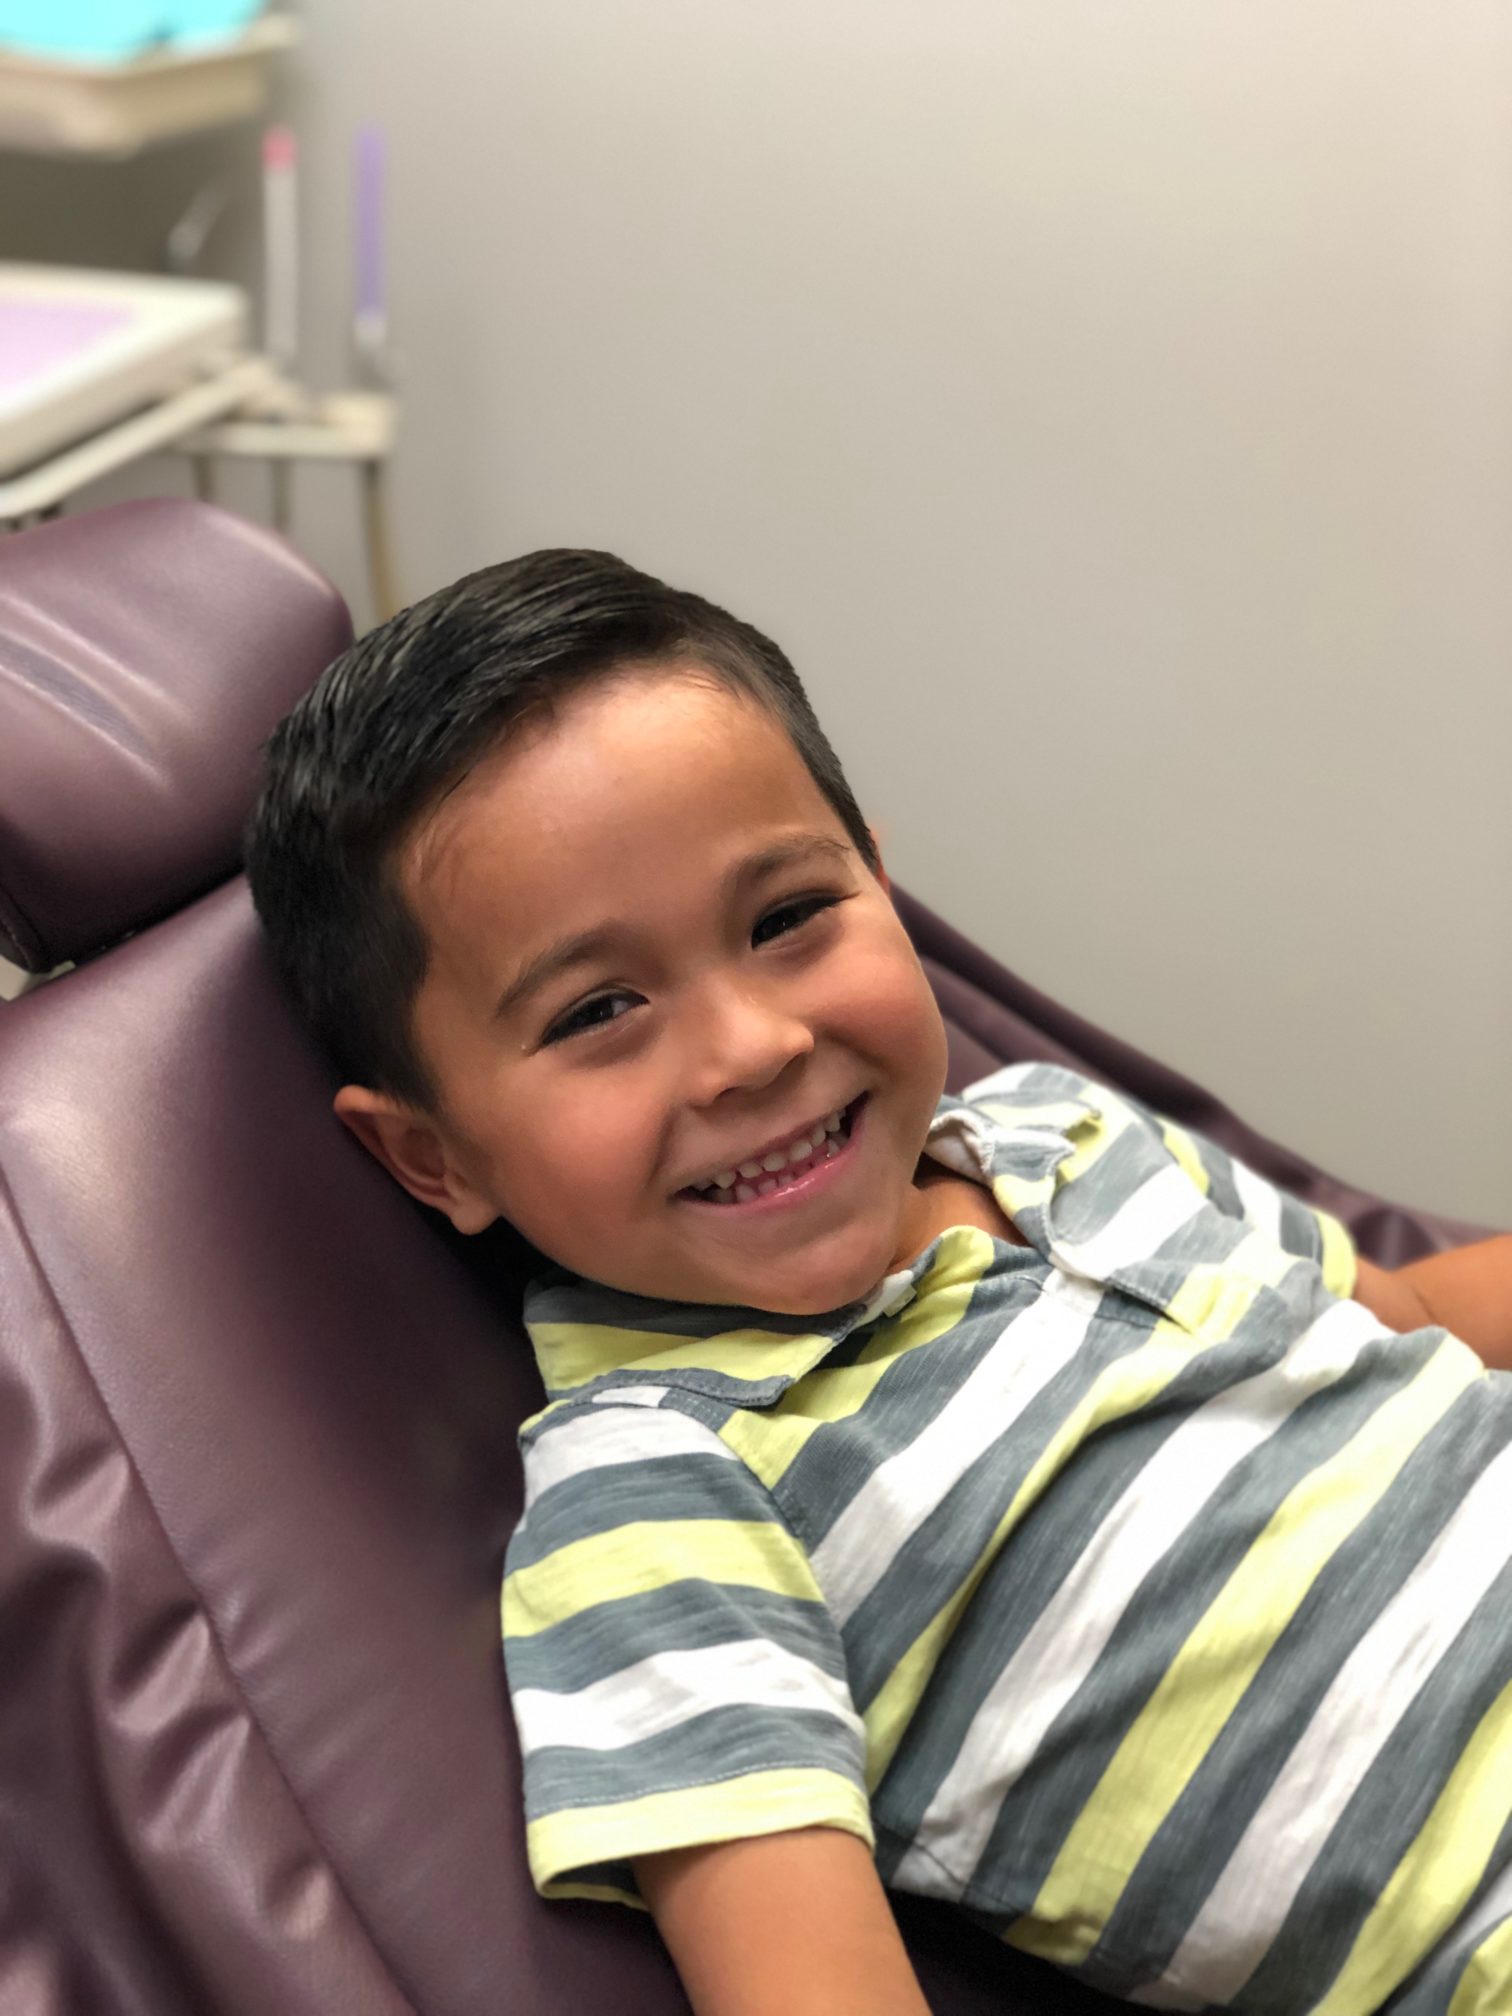 Happy child in dentist chair